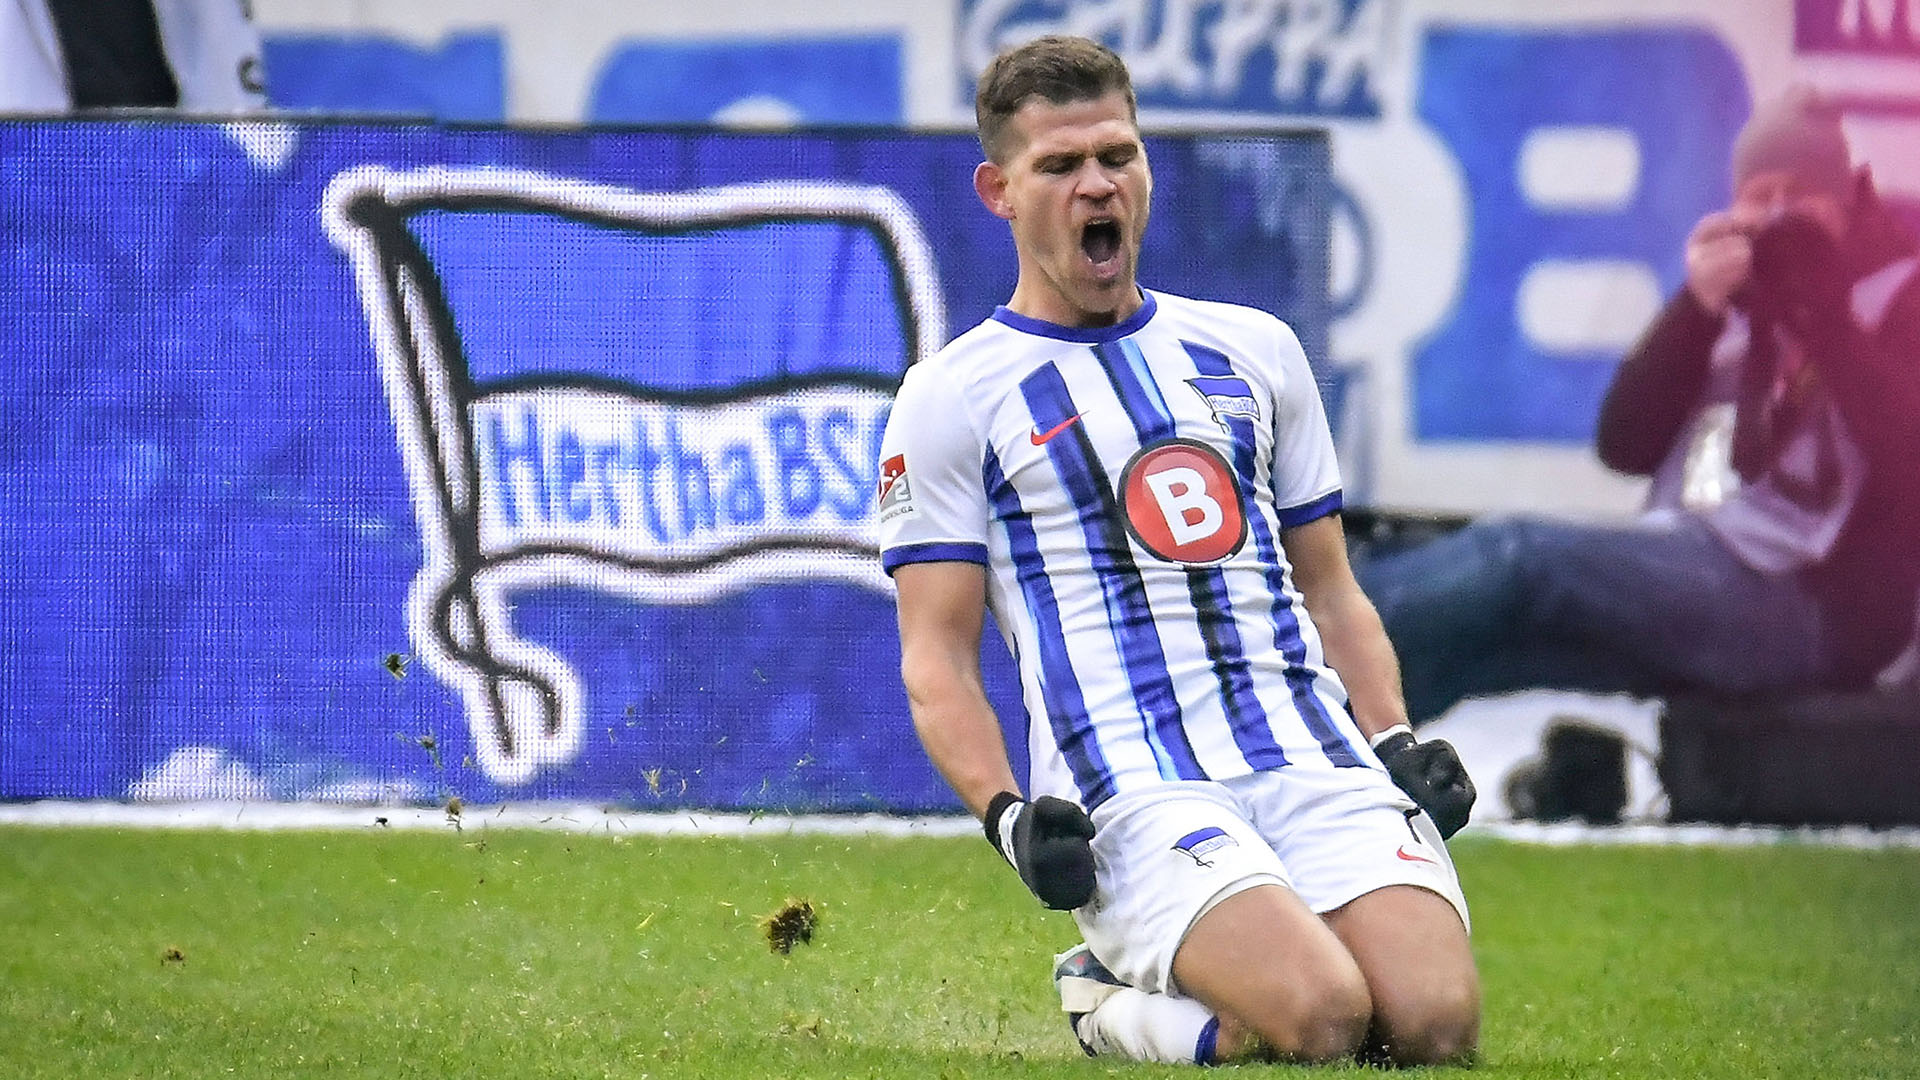 Hertha-Spieler Florian Niederlechner rutscht zum Torjubel auf den Knien (Bild: Imago Images/mix1)